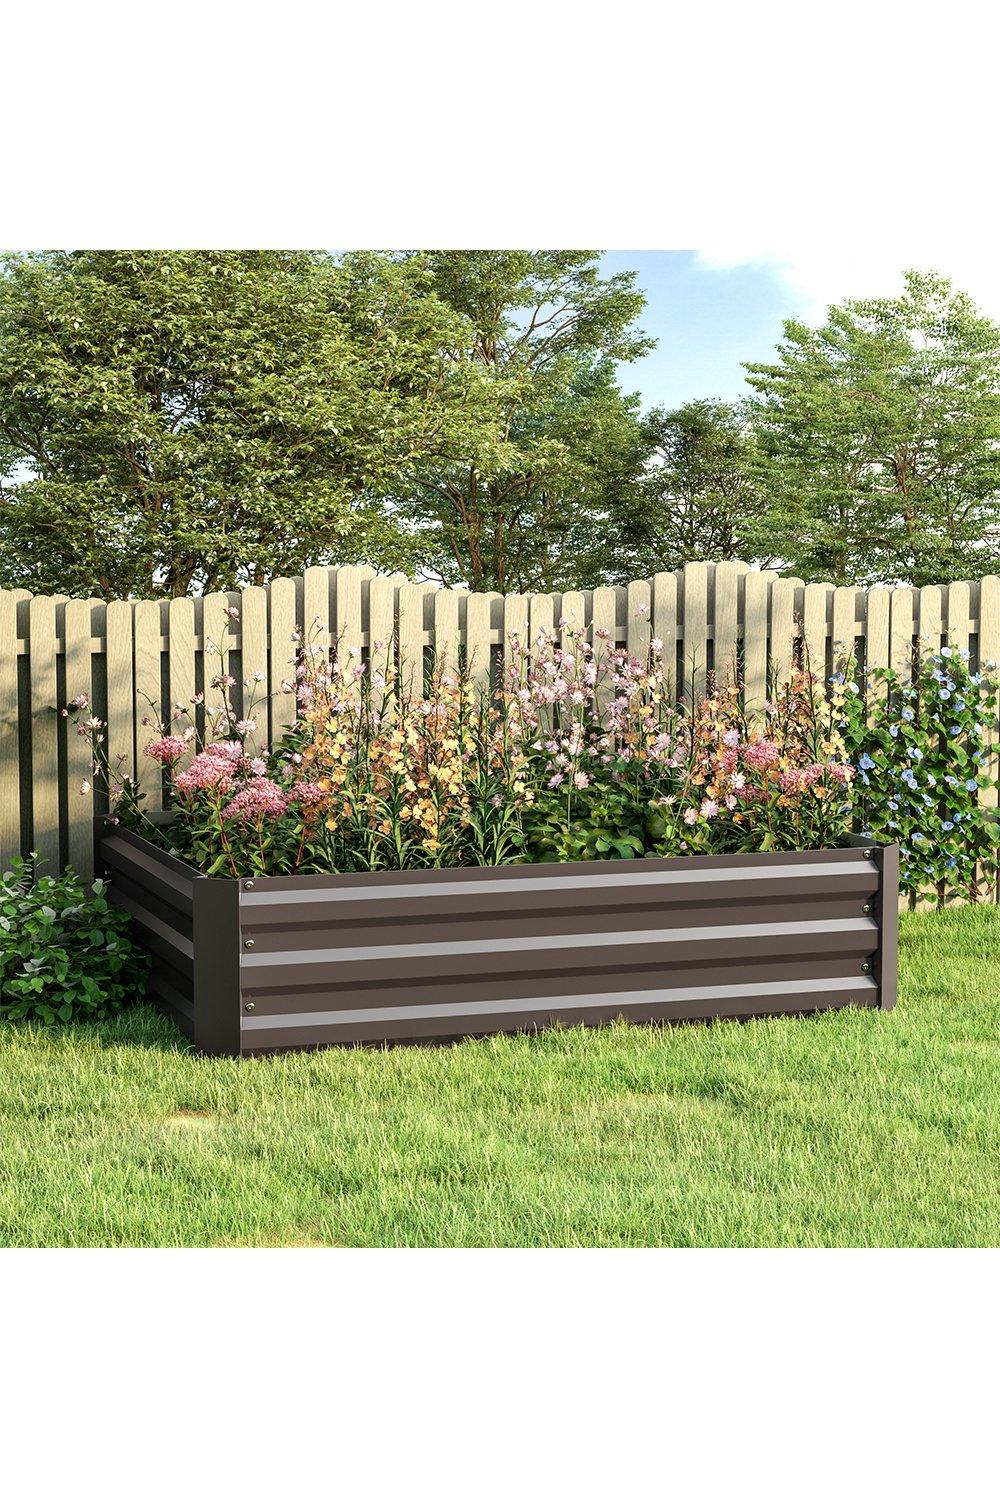 Galvanized Raised Garden Bed Garden Box Planter For Veggie Garden Bed